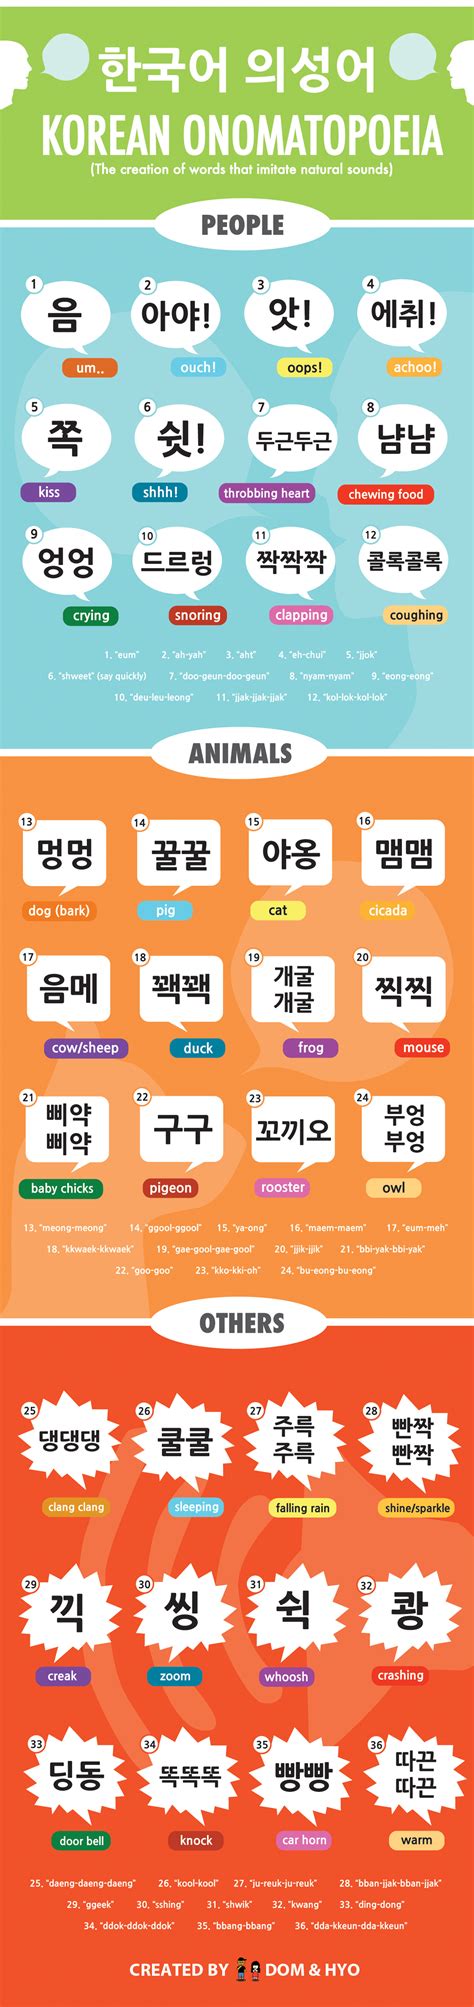 korean sounds onomatopoeia learn basic korean vocabulary